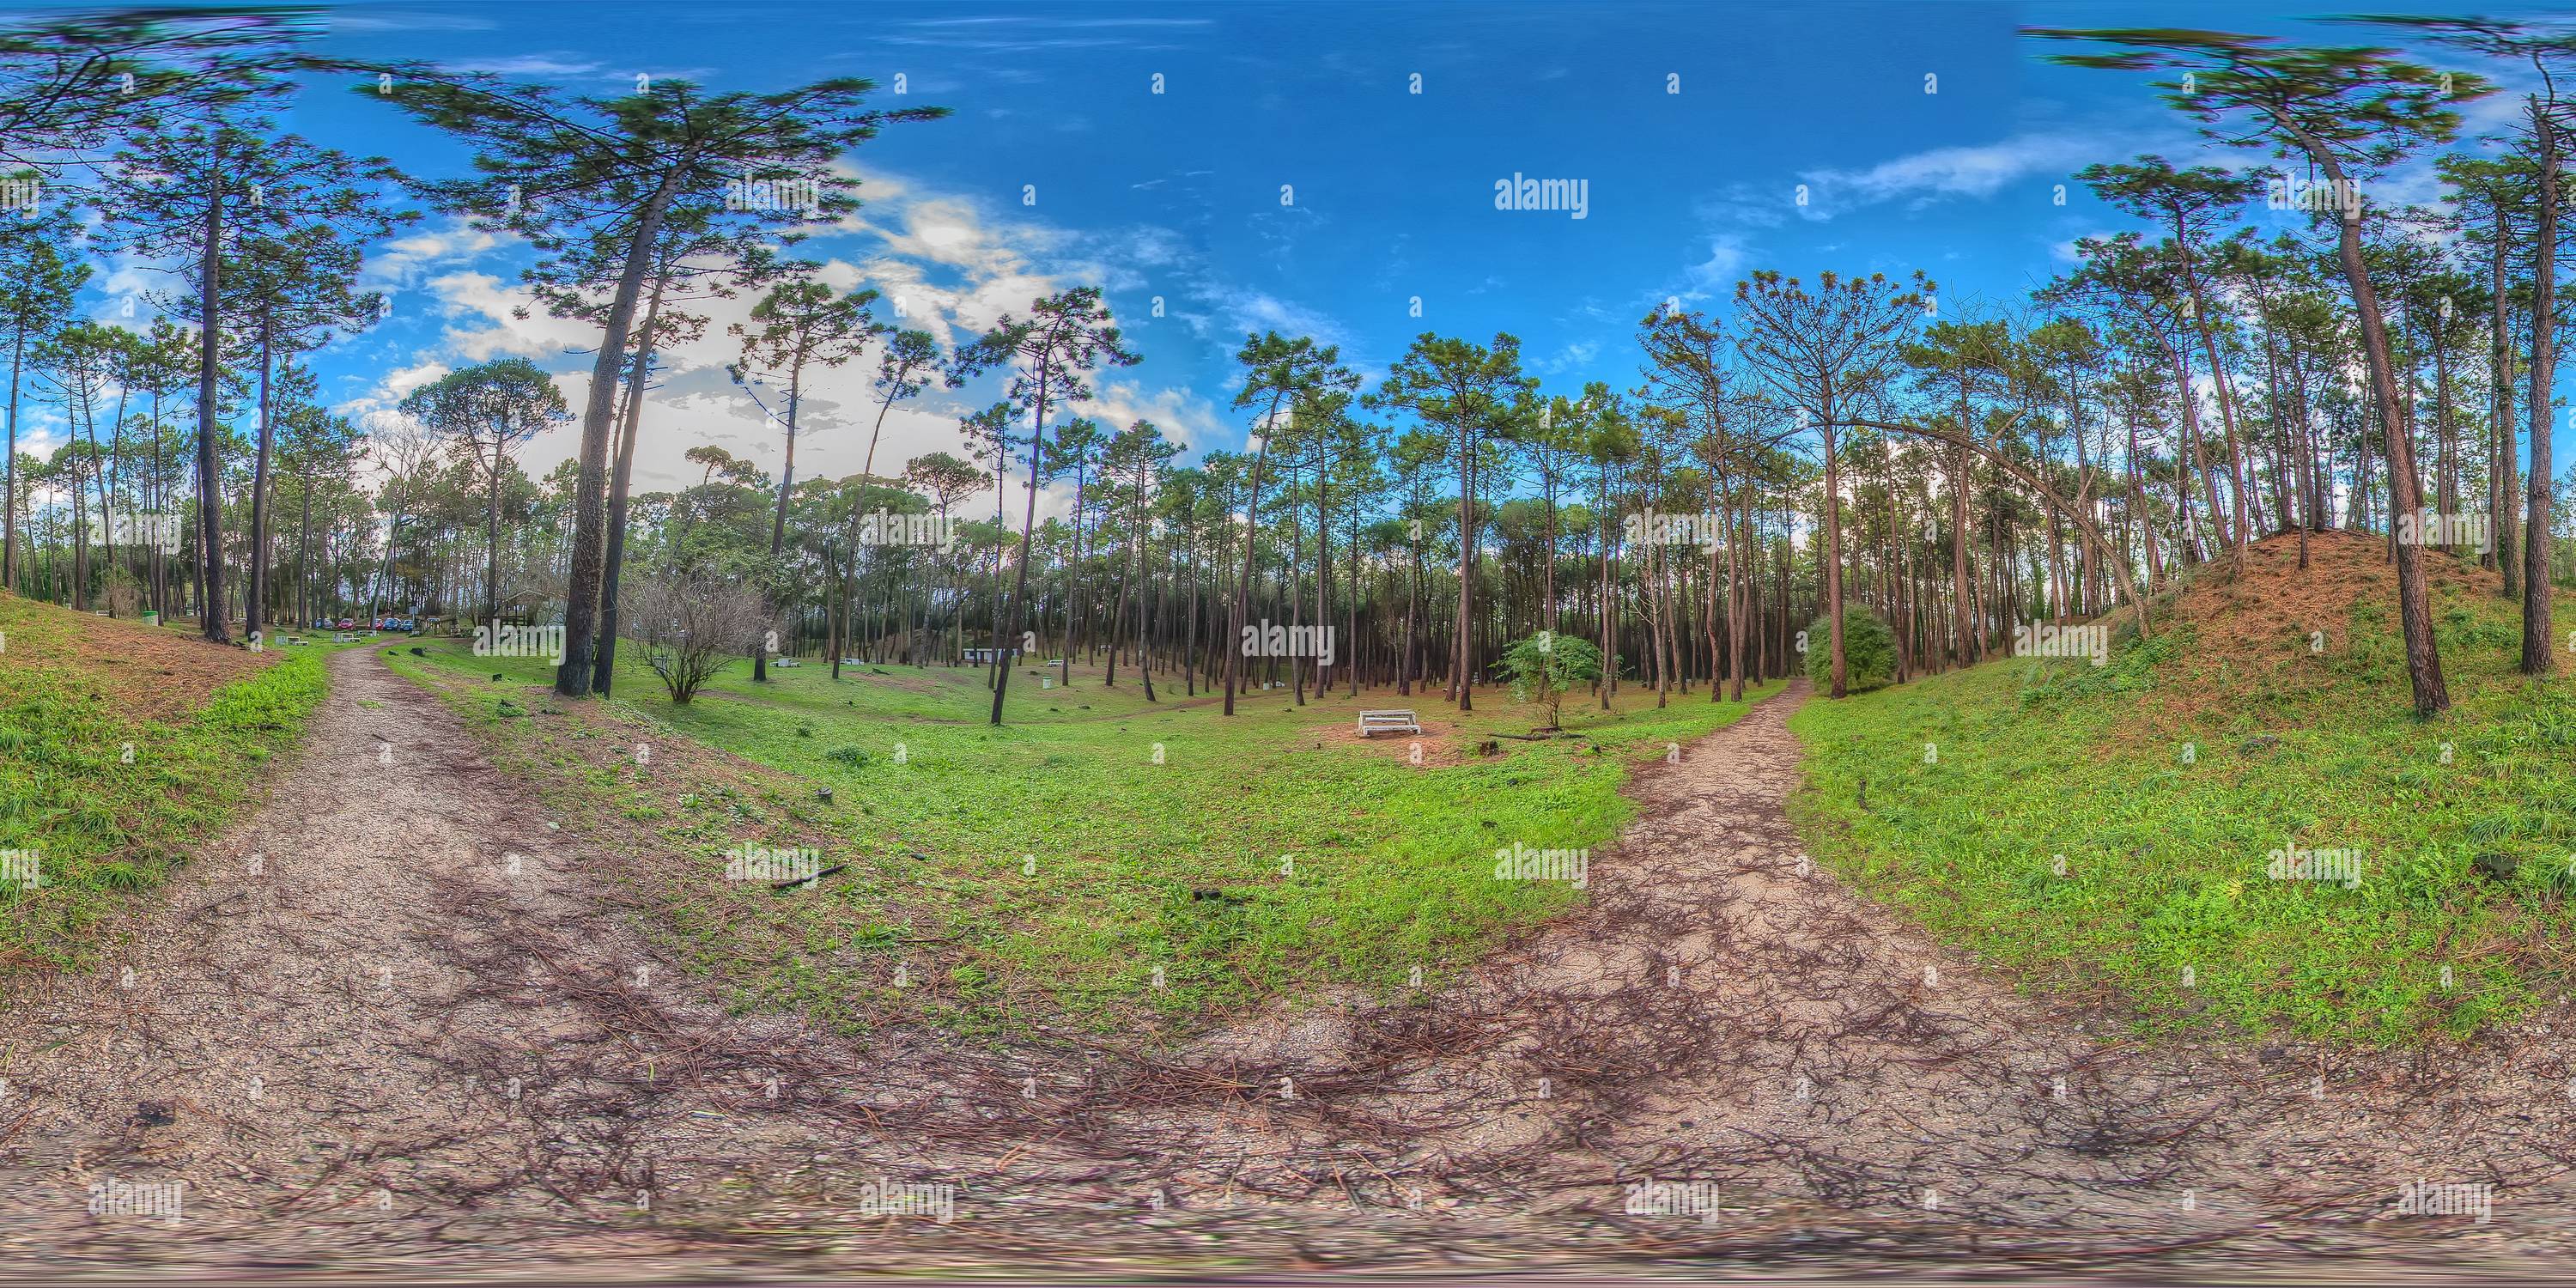 360 degree panoramic view of Liencres - Pinares Parque de Las Dunas de Liencres